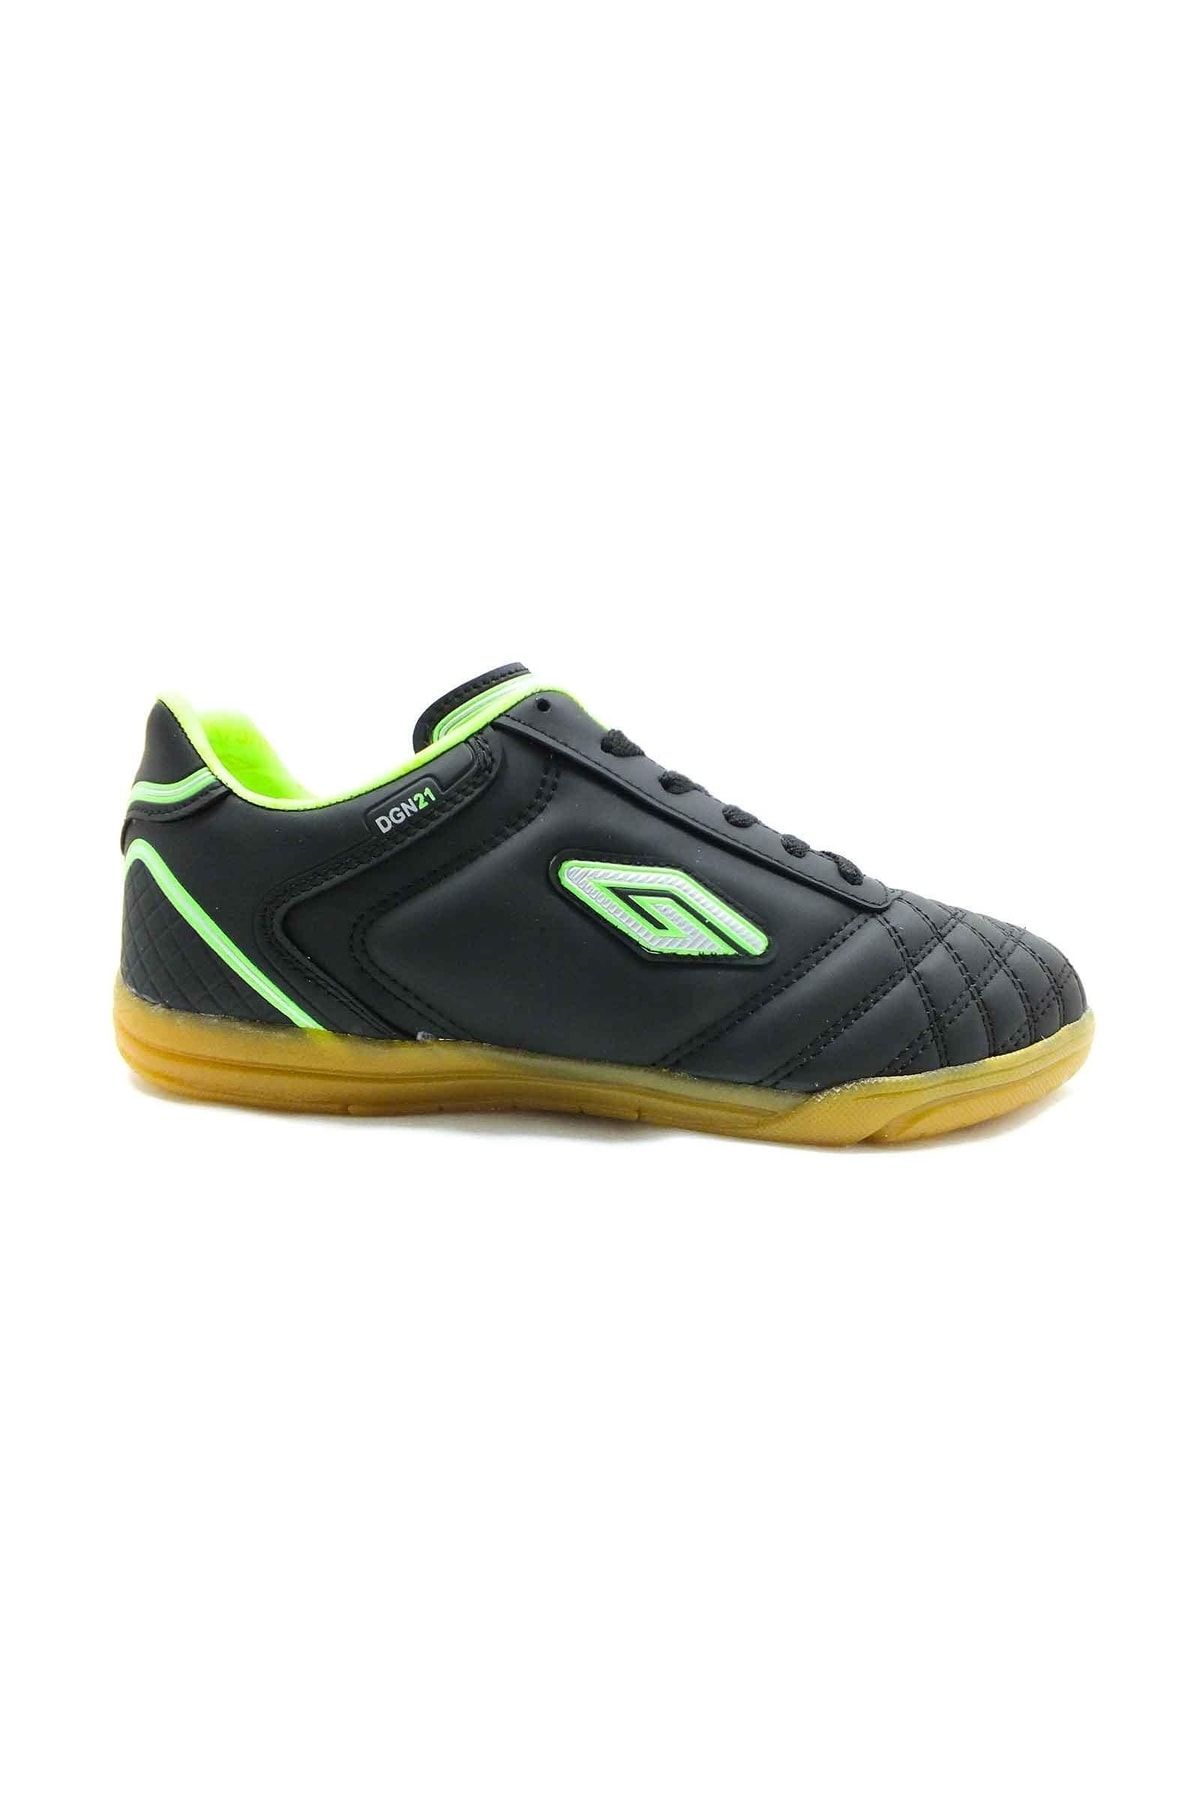 Dugana Futsal Salon-parkur Ayakkabı Siyah-f.yeşil 114 Dgn21